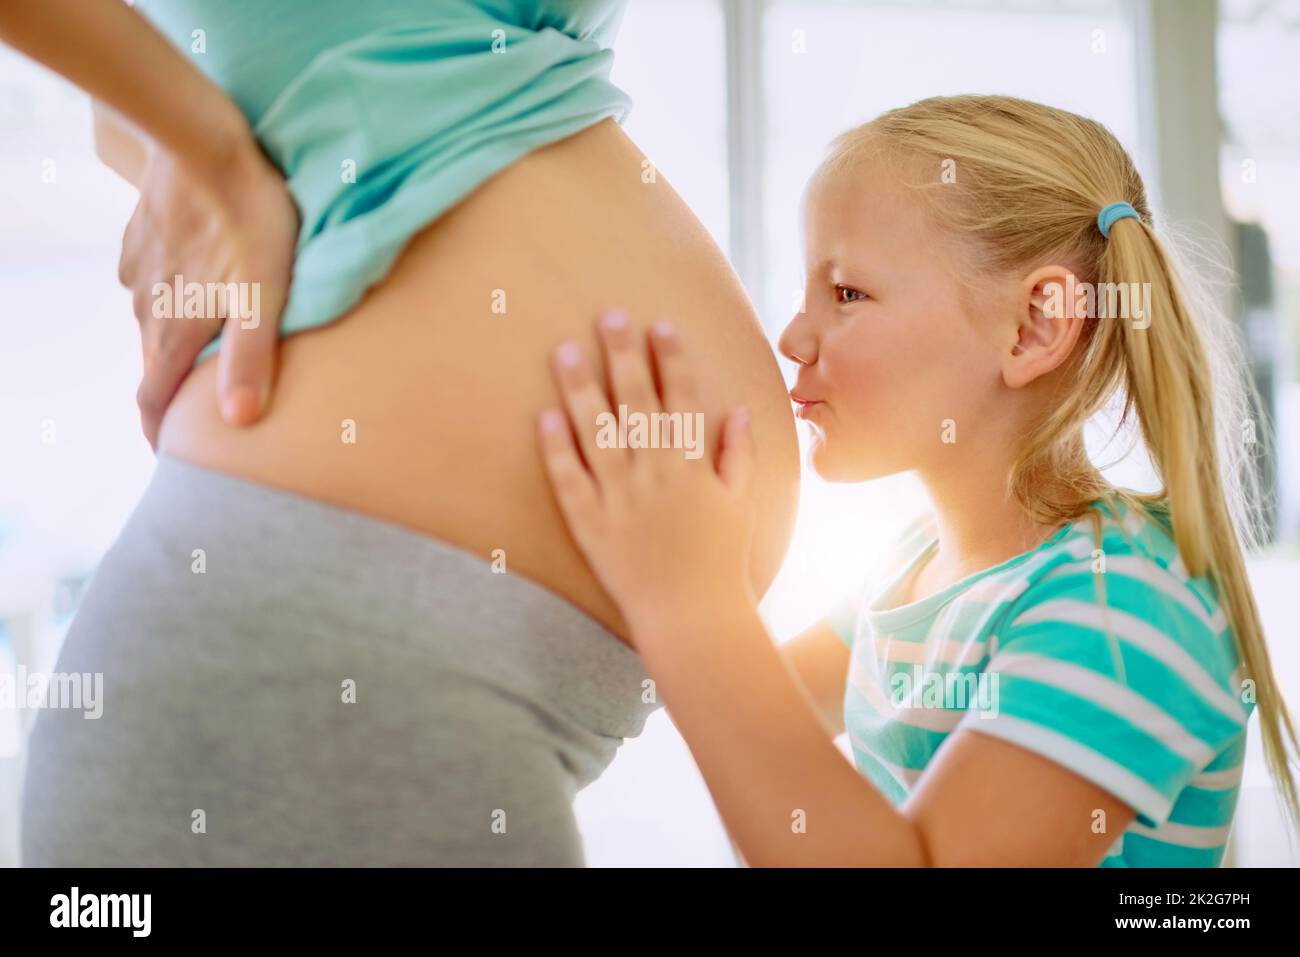 Iban a divertirse mucho, bebé pequeño. Disparo de una niña besando a sus madres embarazada vientre en casa. Foto de stock